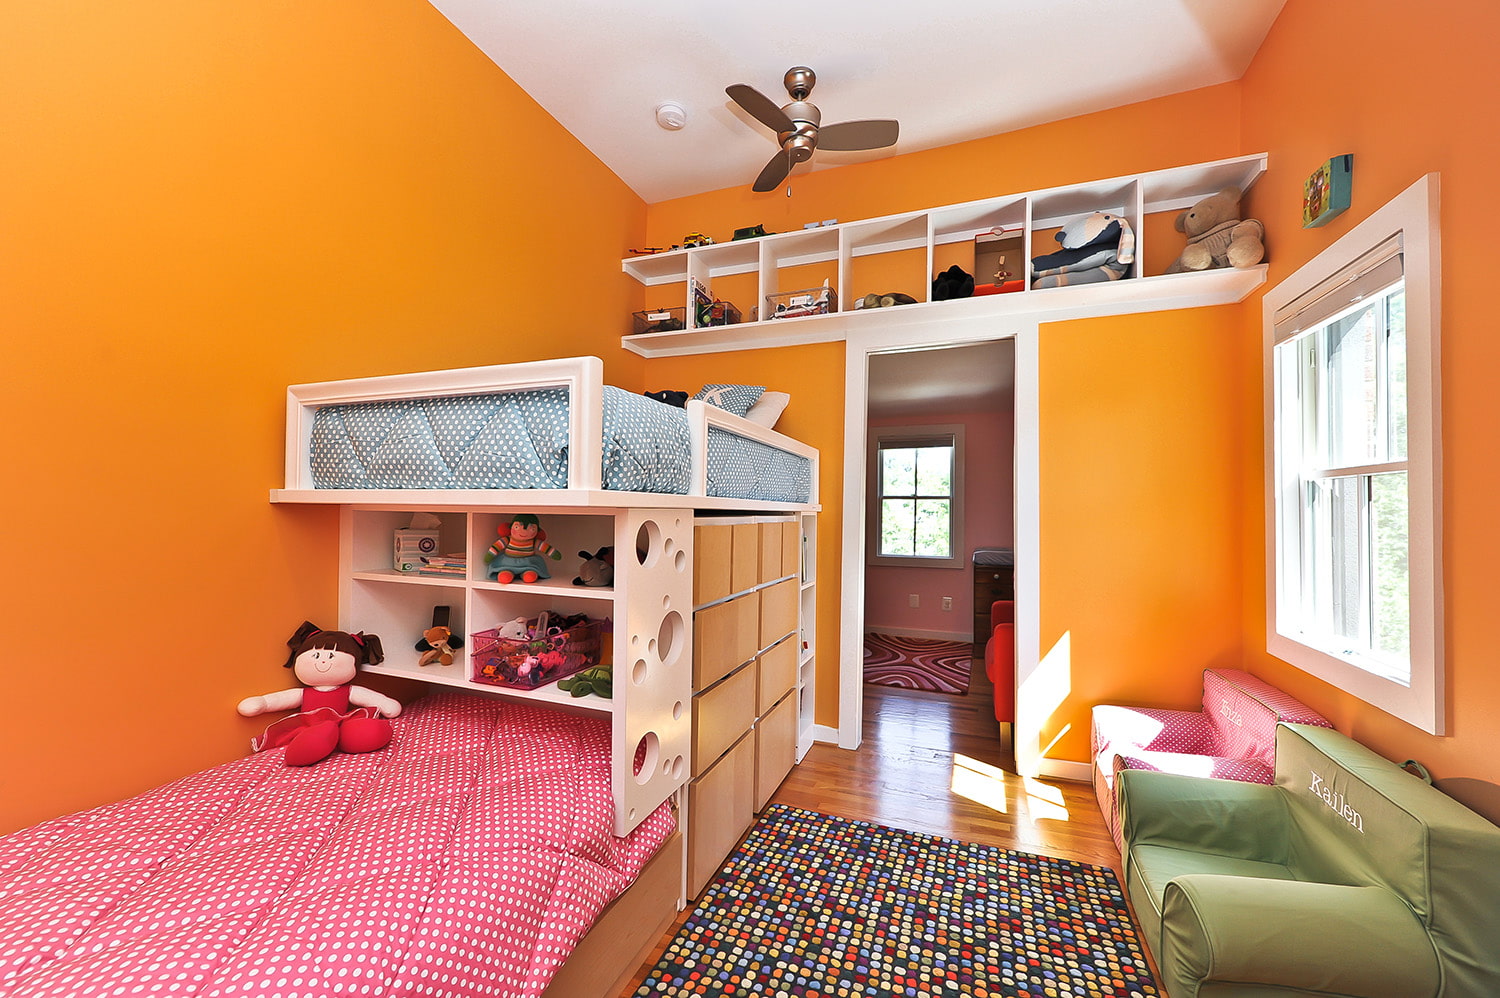 Живем все одной комнате. Спальня для трех девочек. Планировка детской комнаты. Планировка комнаты для девочки. Комната для мальчика и девочки.